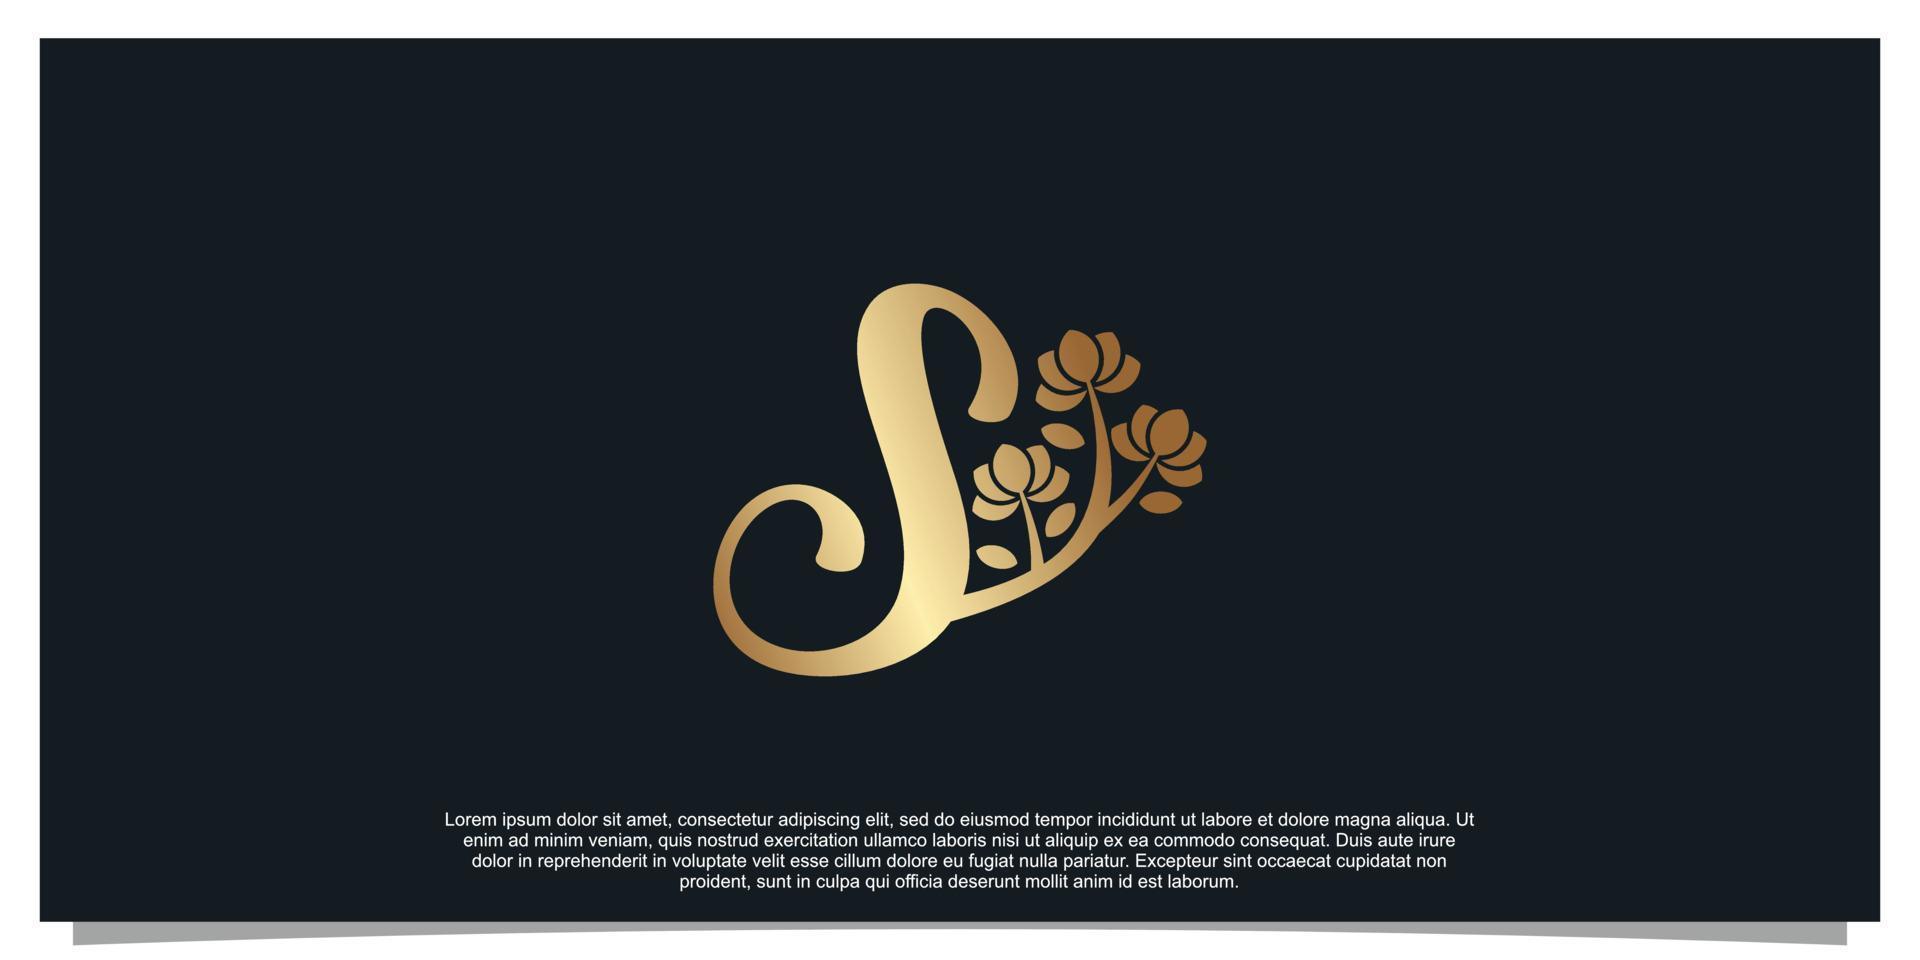 Logo design letter S with flower unique concept Premium Vector